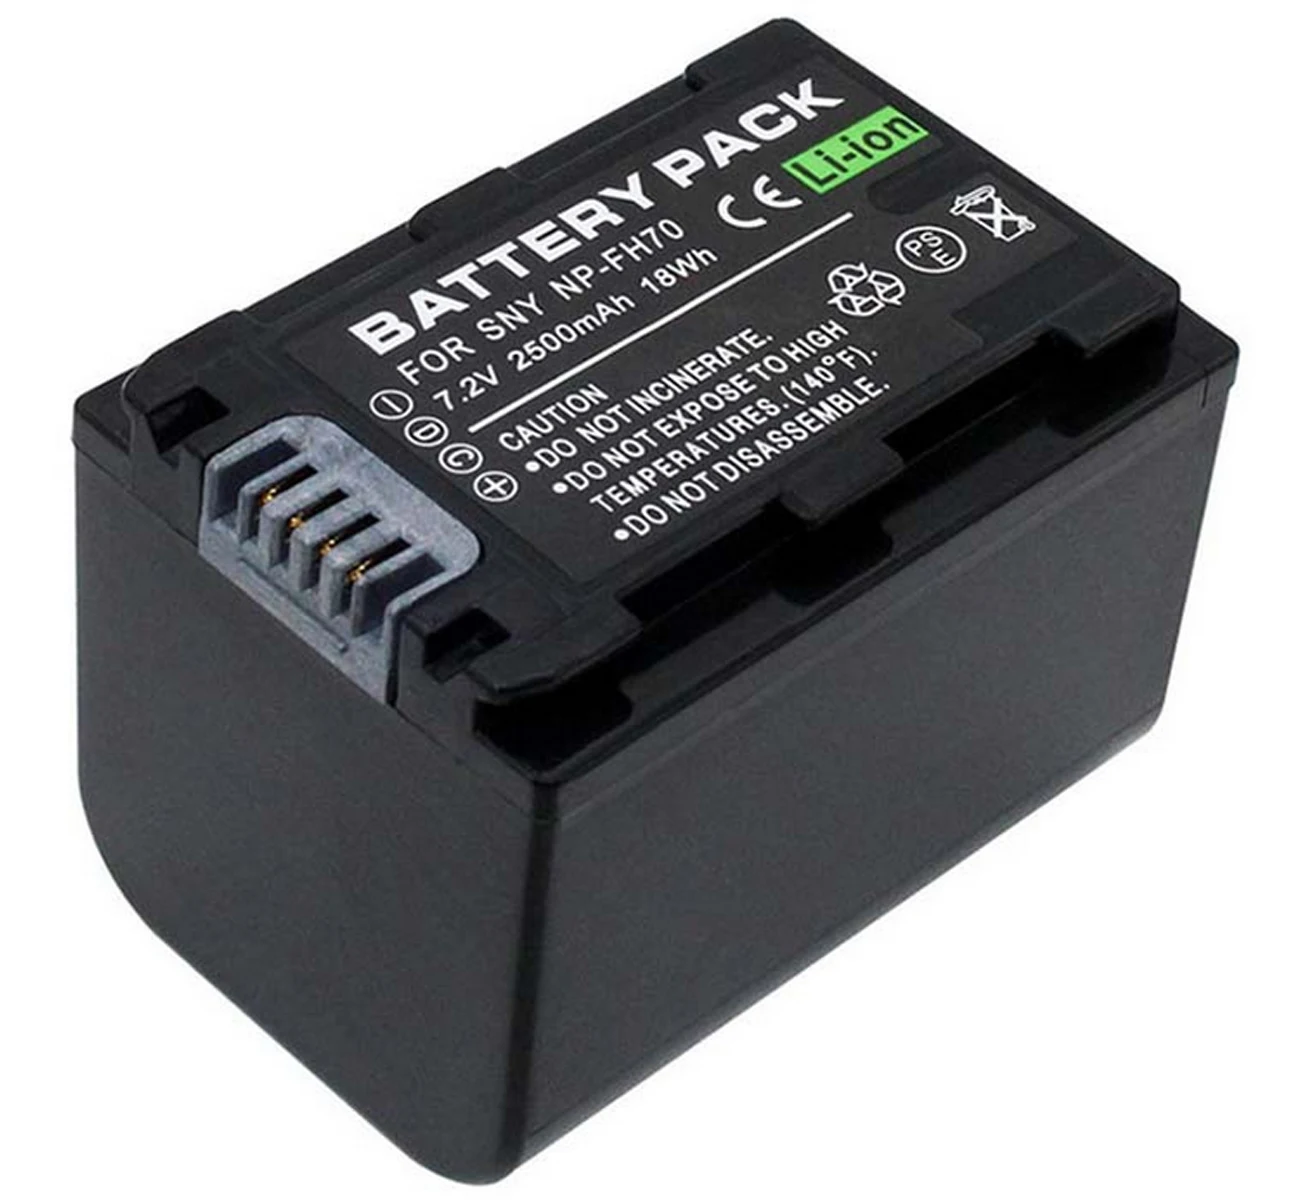 

Battery Pack for Sony DCR-SR190, DCR-SR200, DCR-SR210, DCR-SR220, DCR-SR220D, DCR-SR290, DCR-SR300 Handycam Camcorder